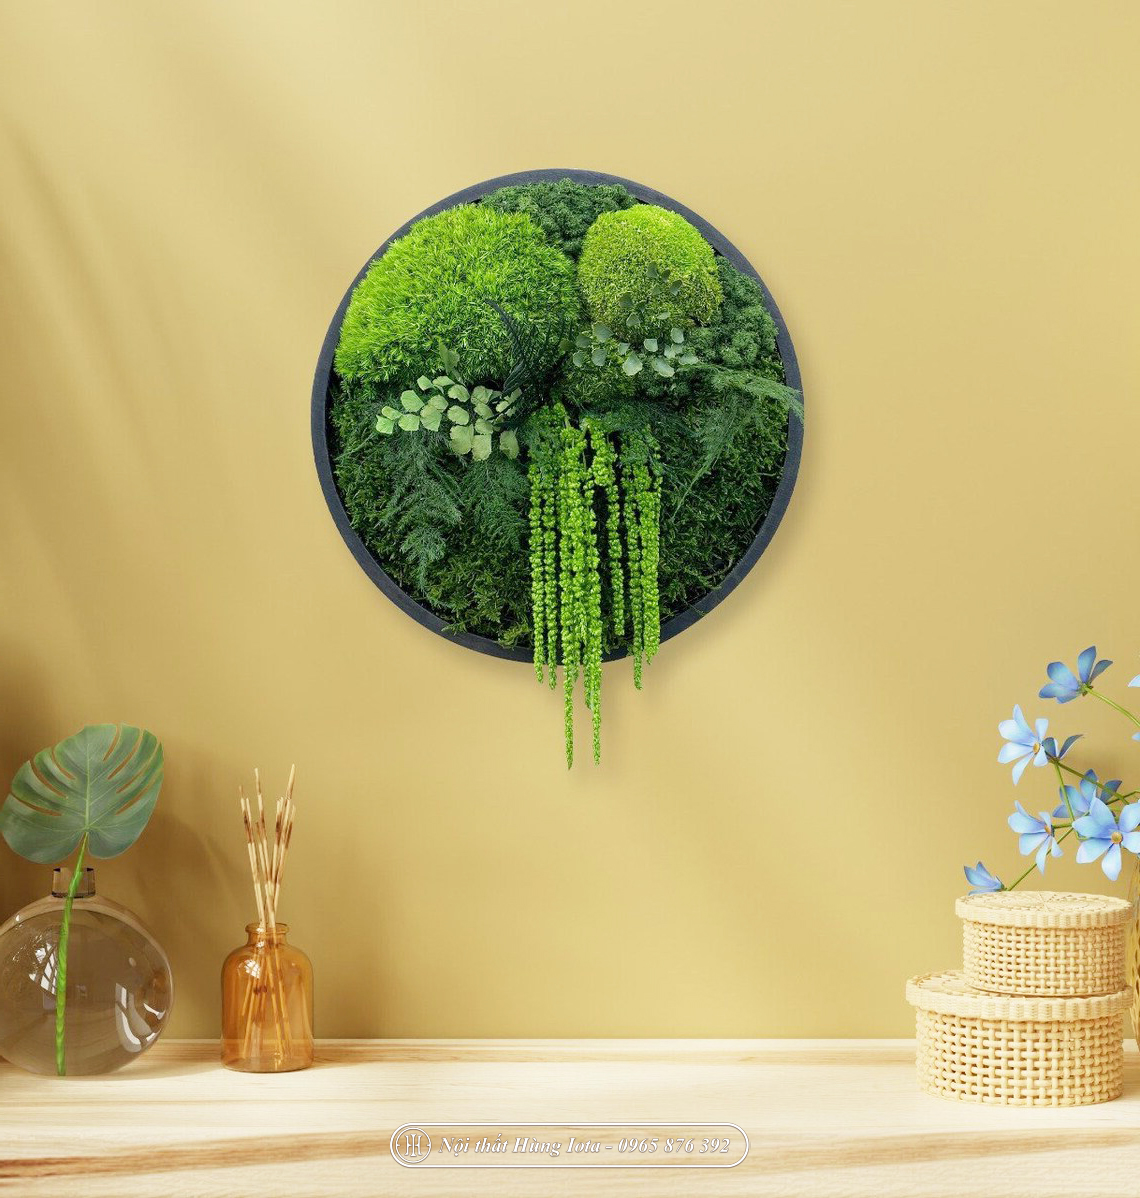 Tranh rêu hình tròn terrarium đa dạng thảm thực vật